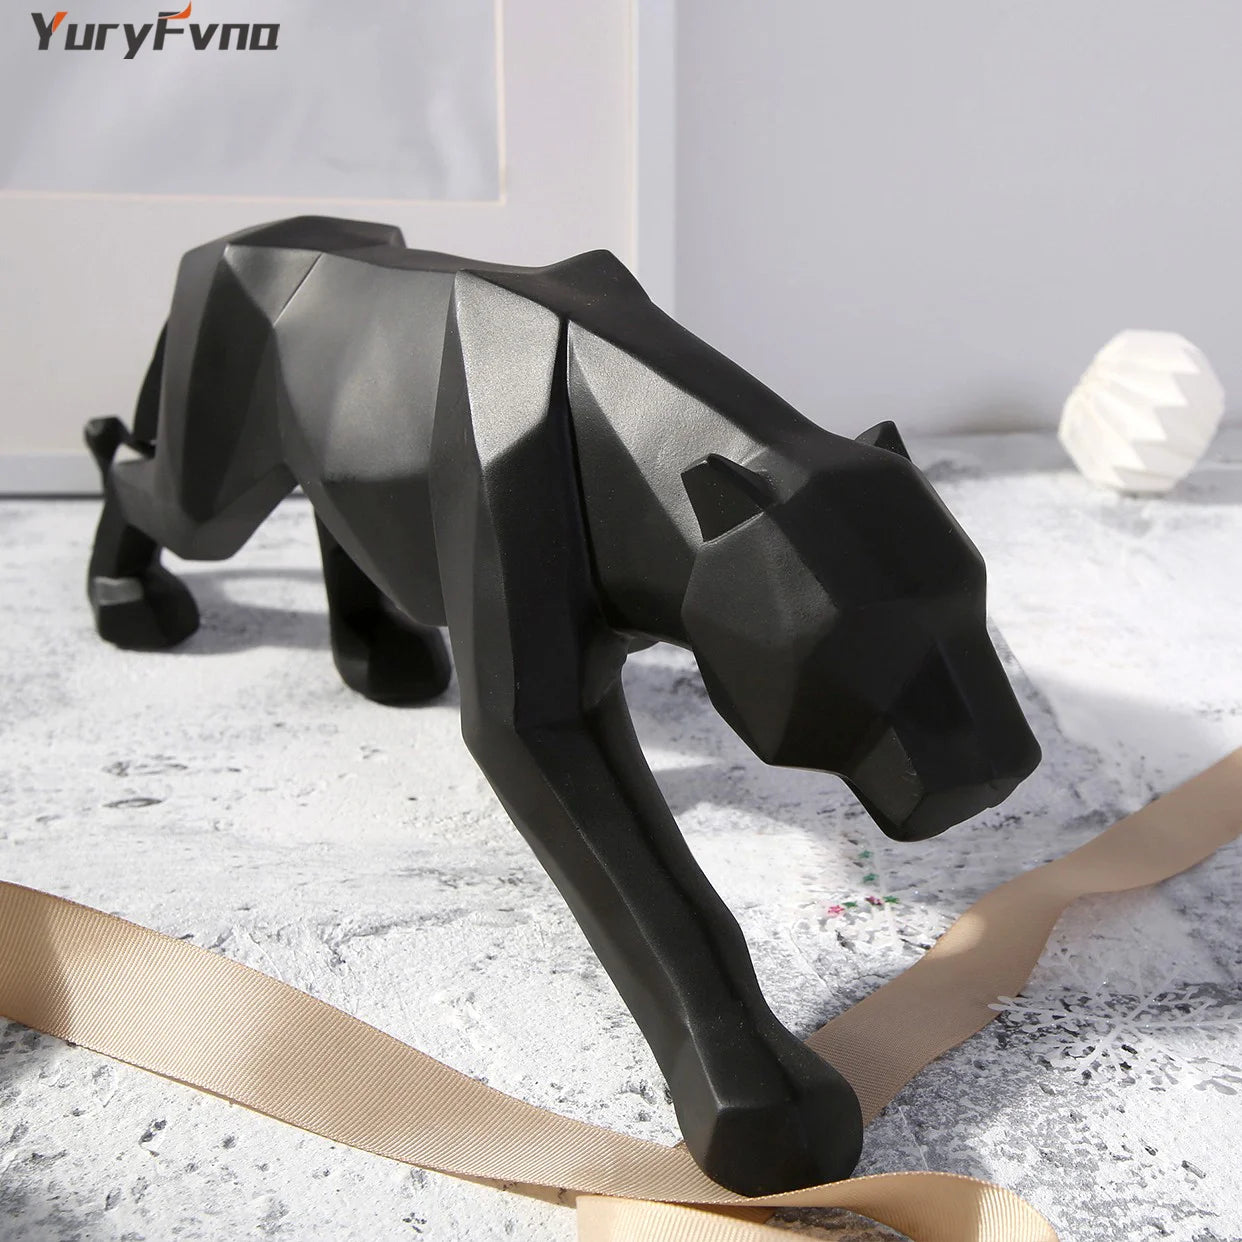 Yuryfvna Resumo Resina Leopardo estátua geométrica Pantera de vida selvagem Figura escultura de animais modernos Decoração de escritório dom